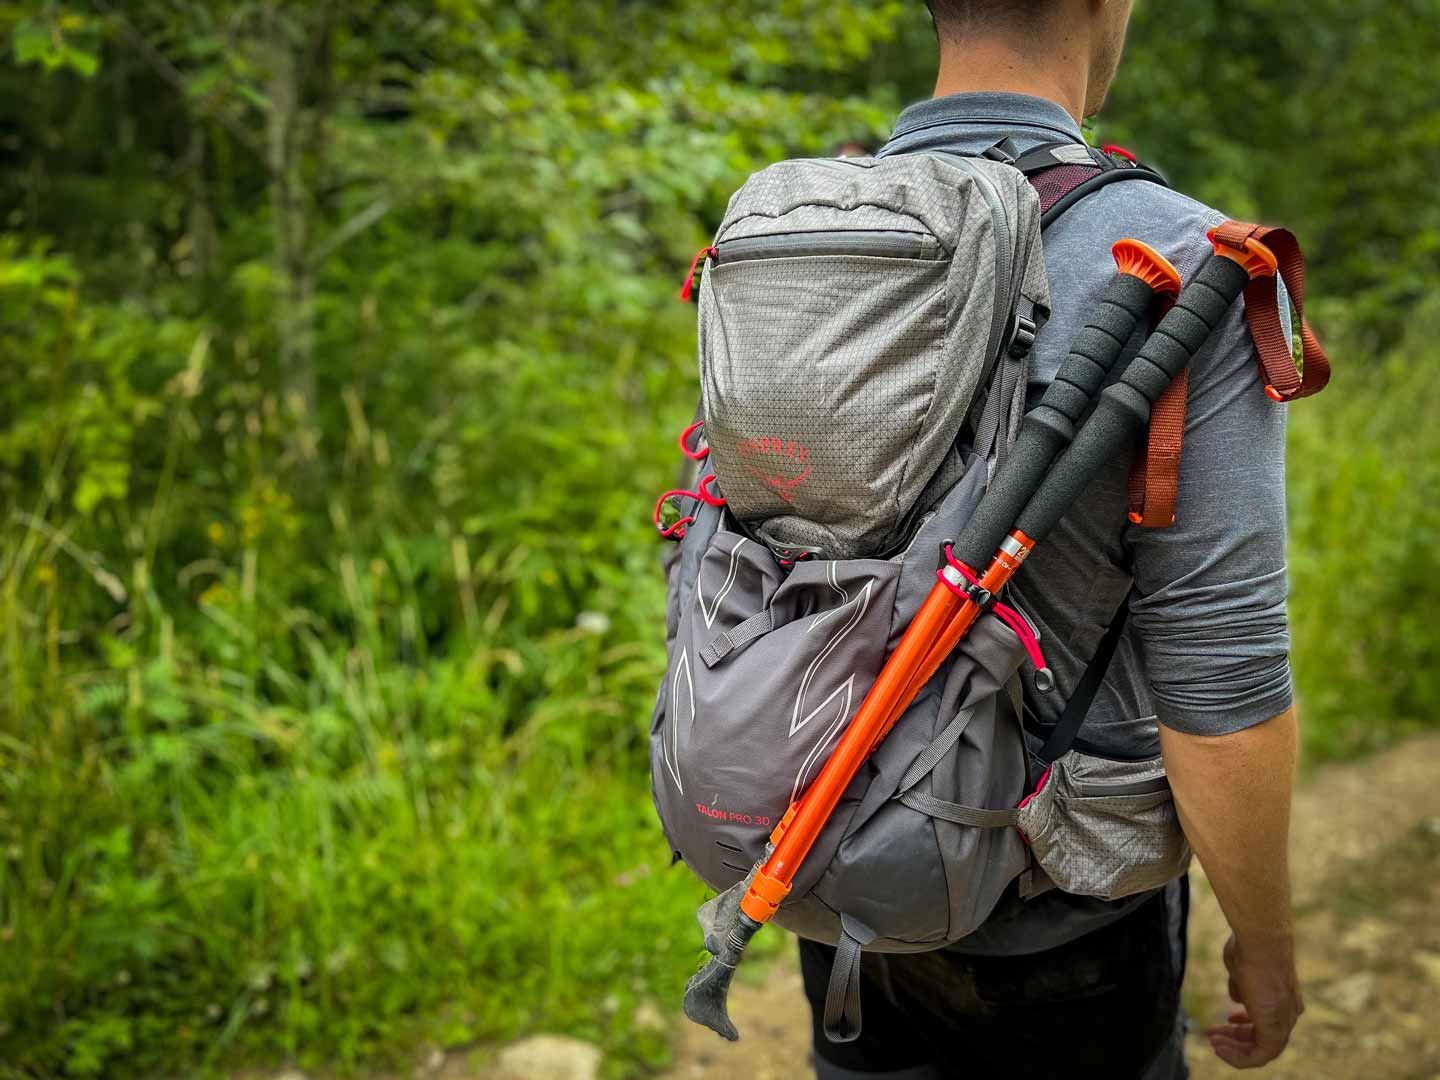 osprey talon pro hiking backpack